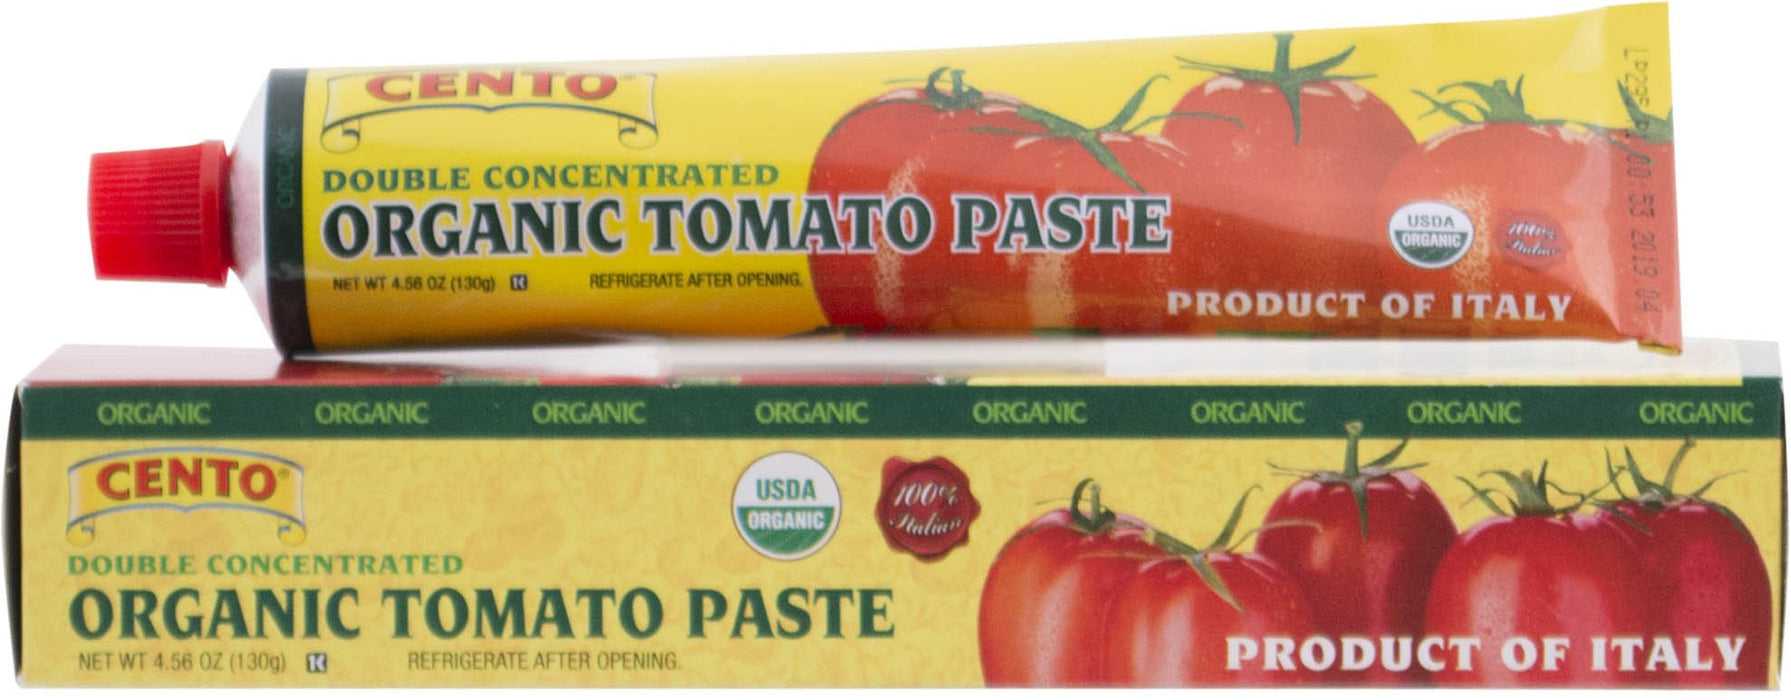 Cento Organic Tomato Paste in a Tube, 4.56 oz | 130g